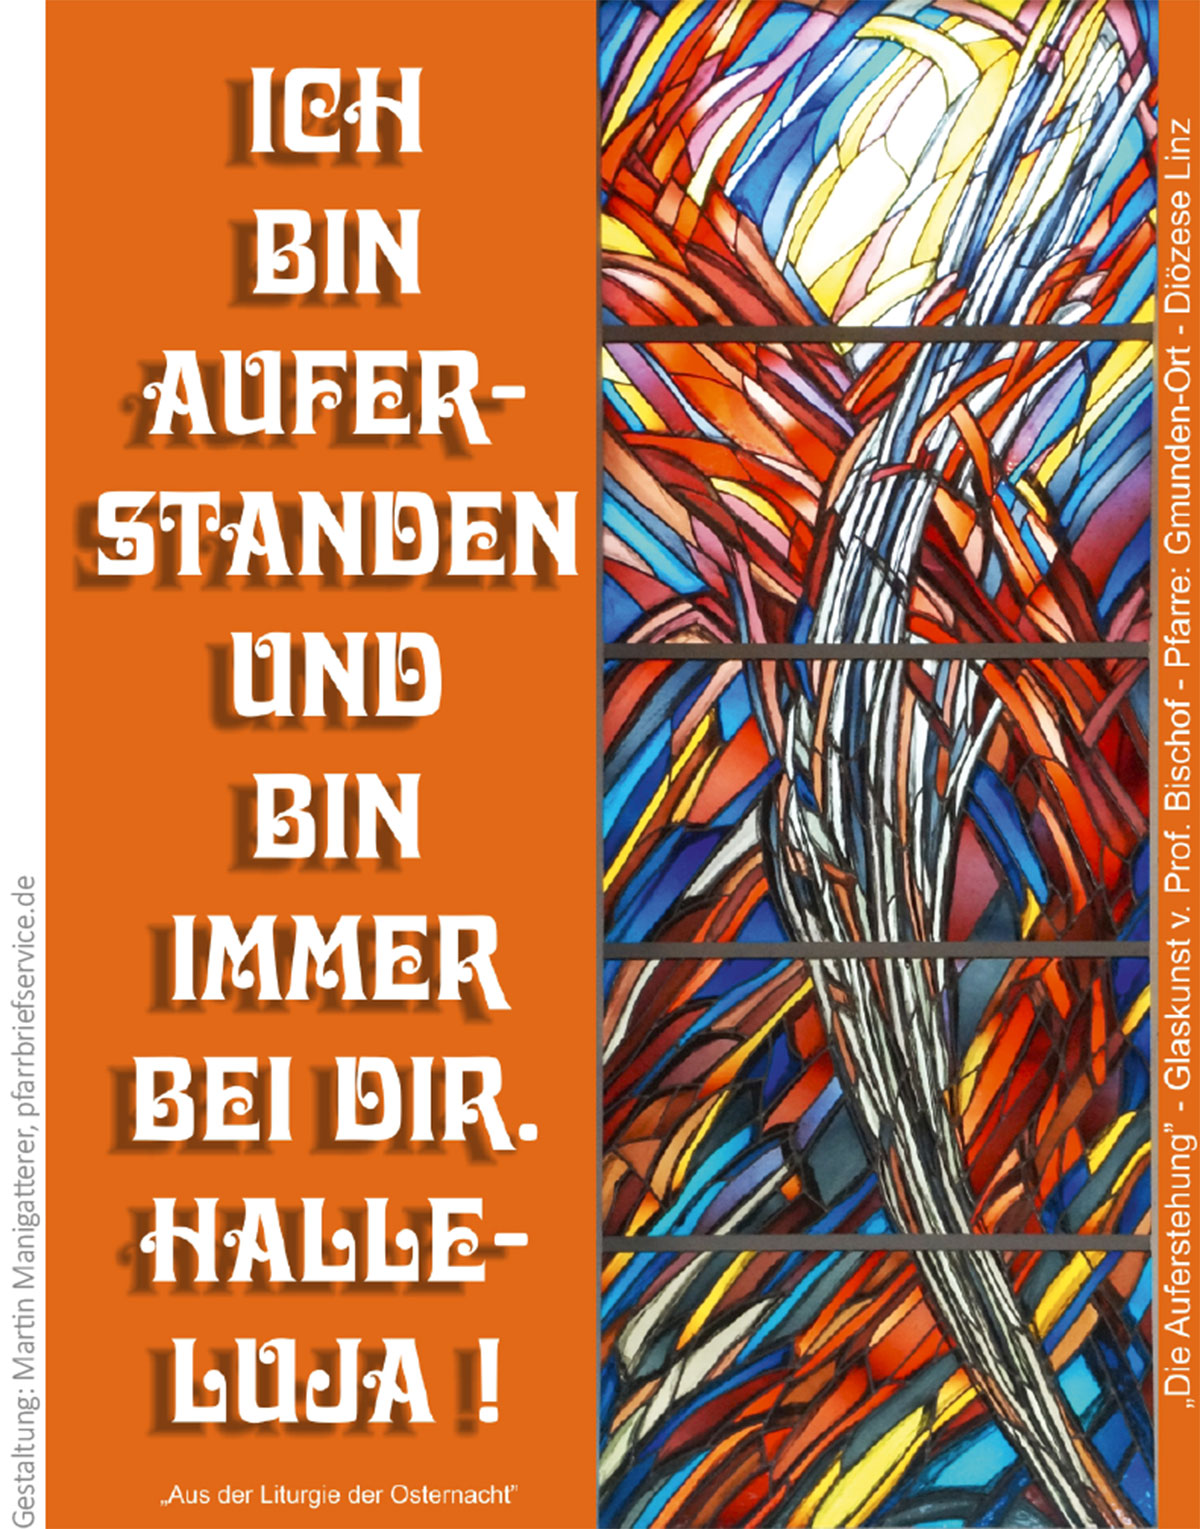 Auferstehung (Glaskunst von Prof. Bischof, Pfarrei Gmunden-Ort, Karte von: Martin Manigatterer, pfarrbriefservice.de)